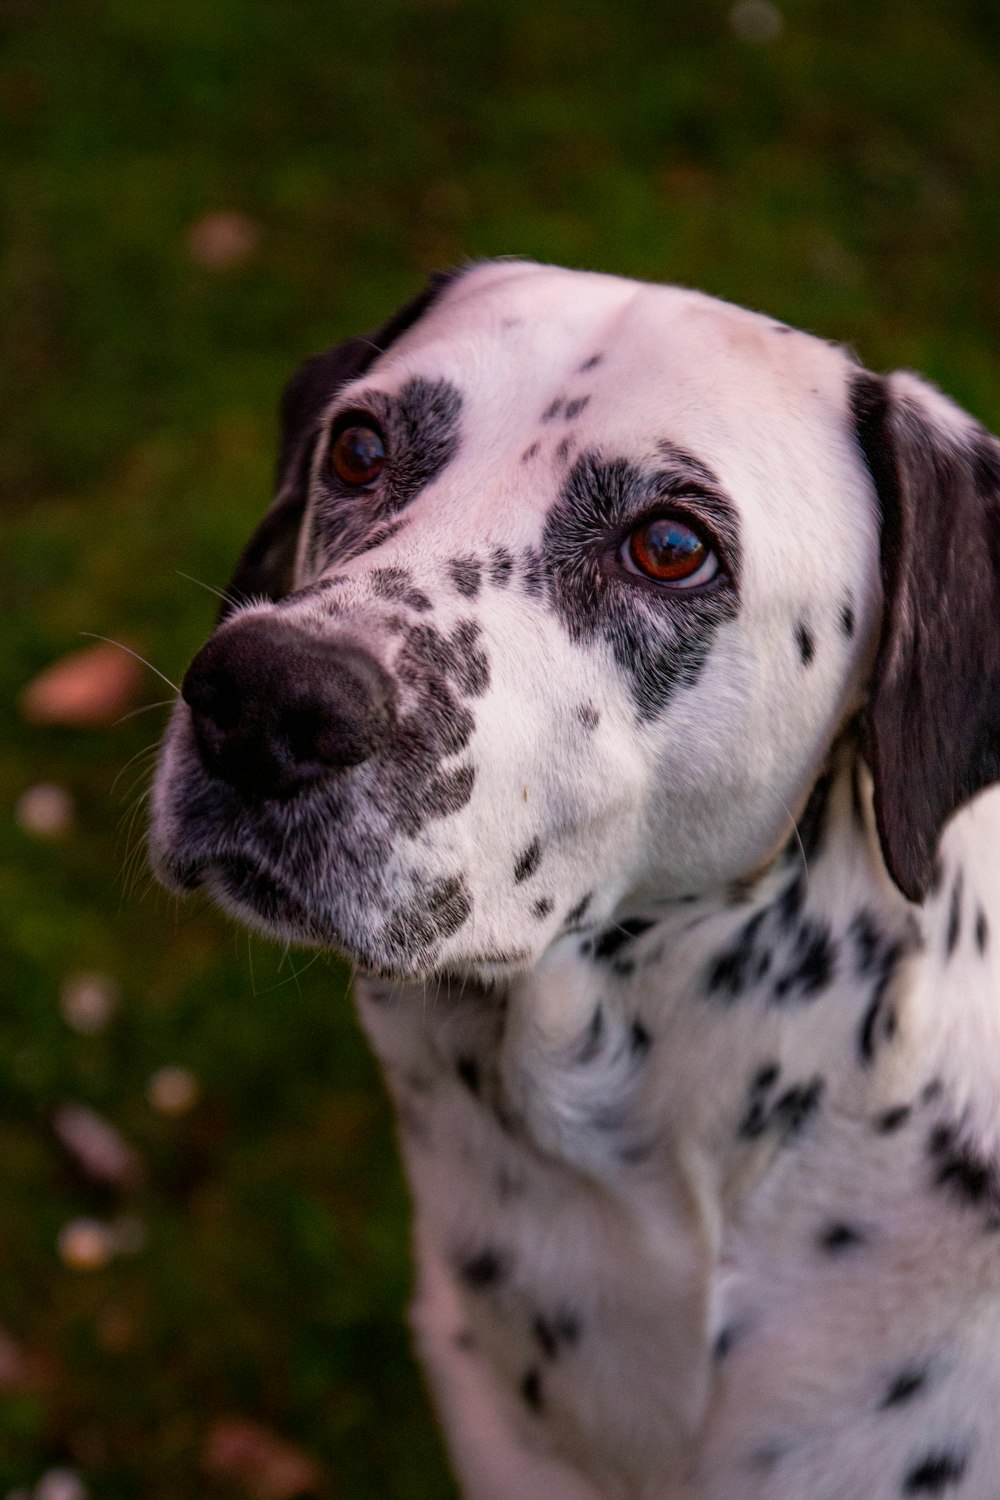 a dalmatian dog looking up at the camera